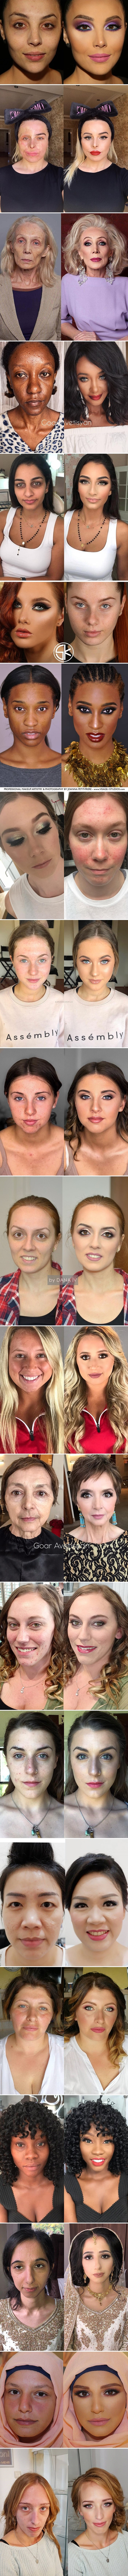 Žene su pokazale nevjerojatan način na koji šminka mijenja njihova lica